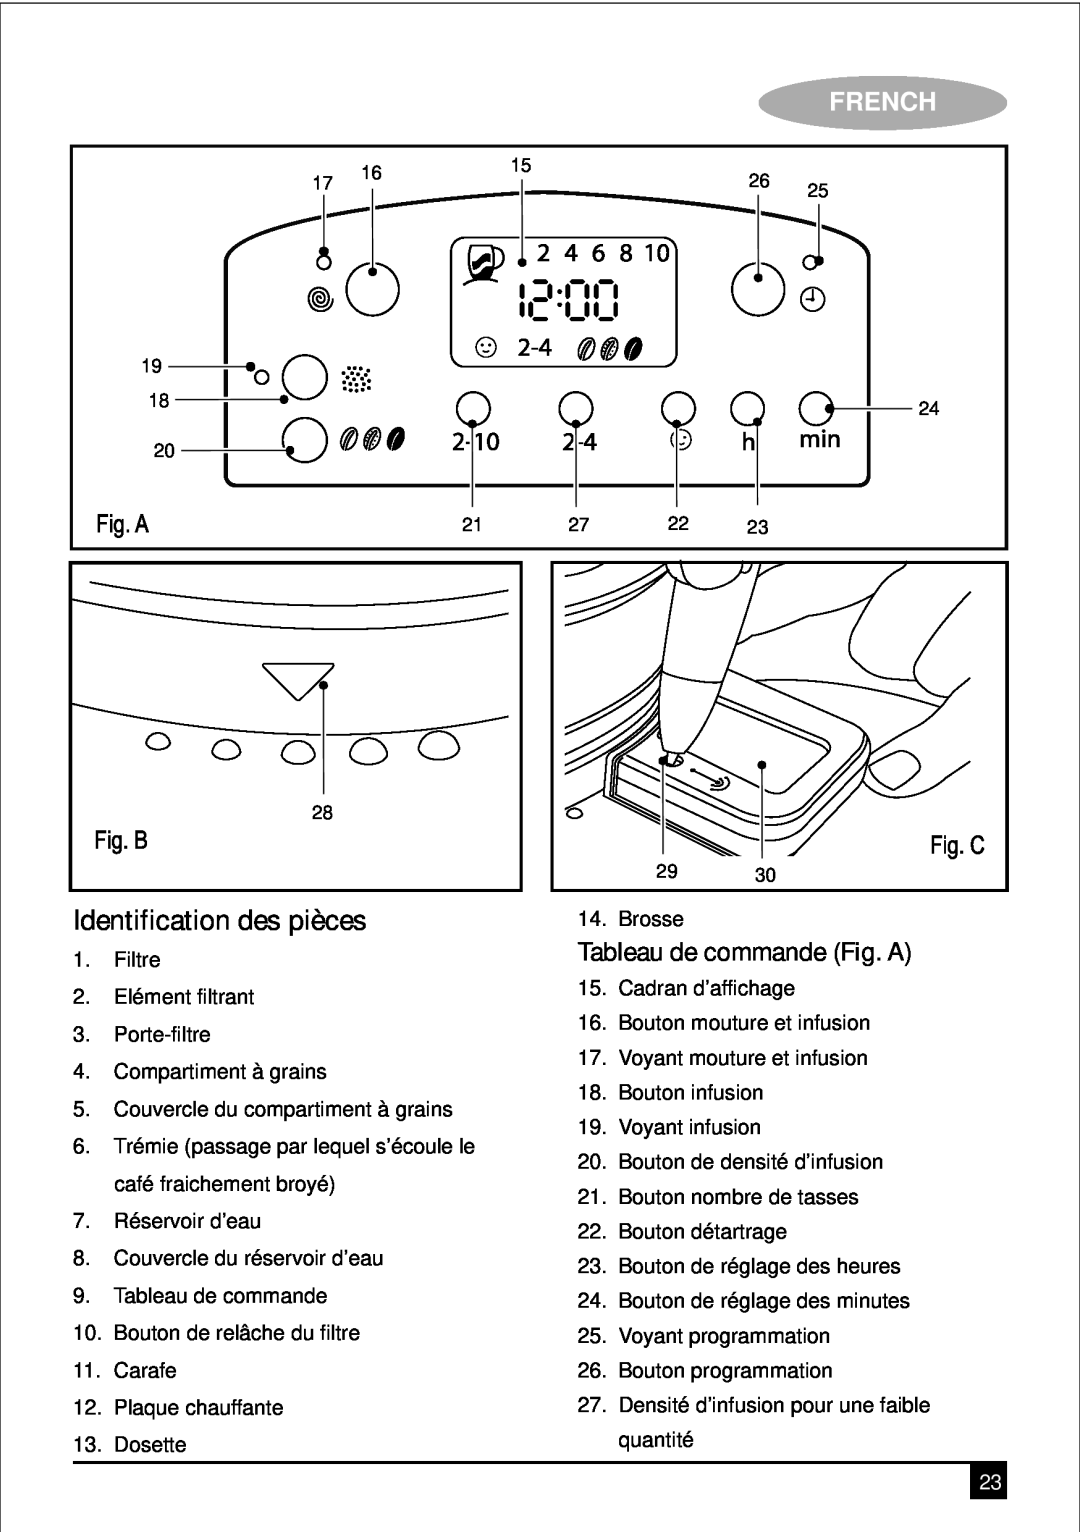 Black & Decker PRCM500 manual Identification des pièces, Tableau de commande Fig. A, French 